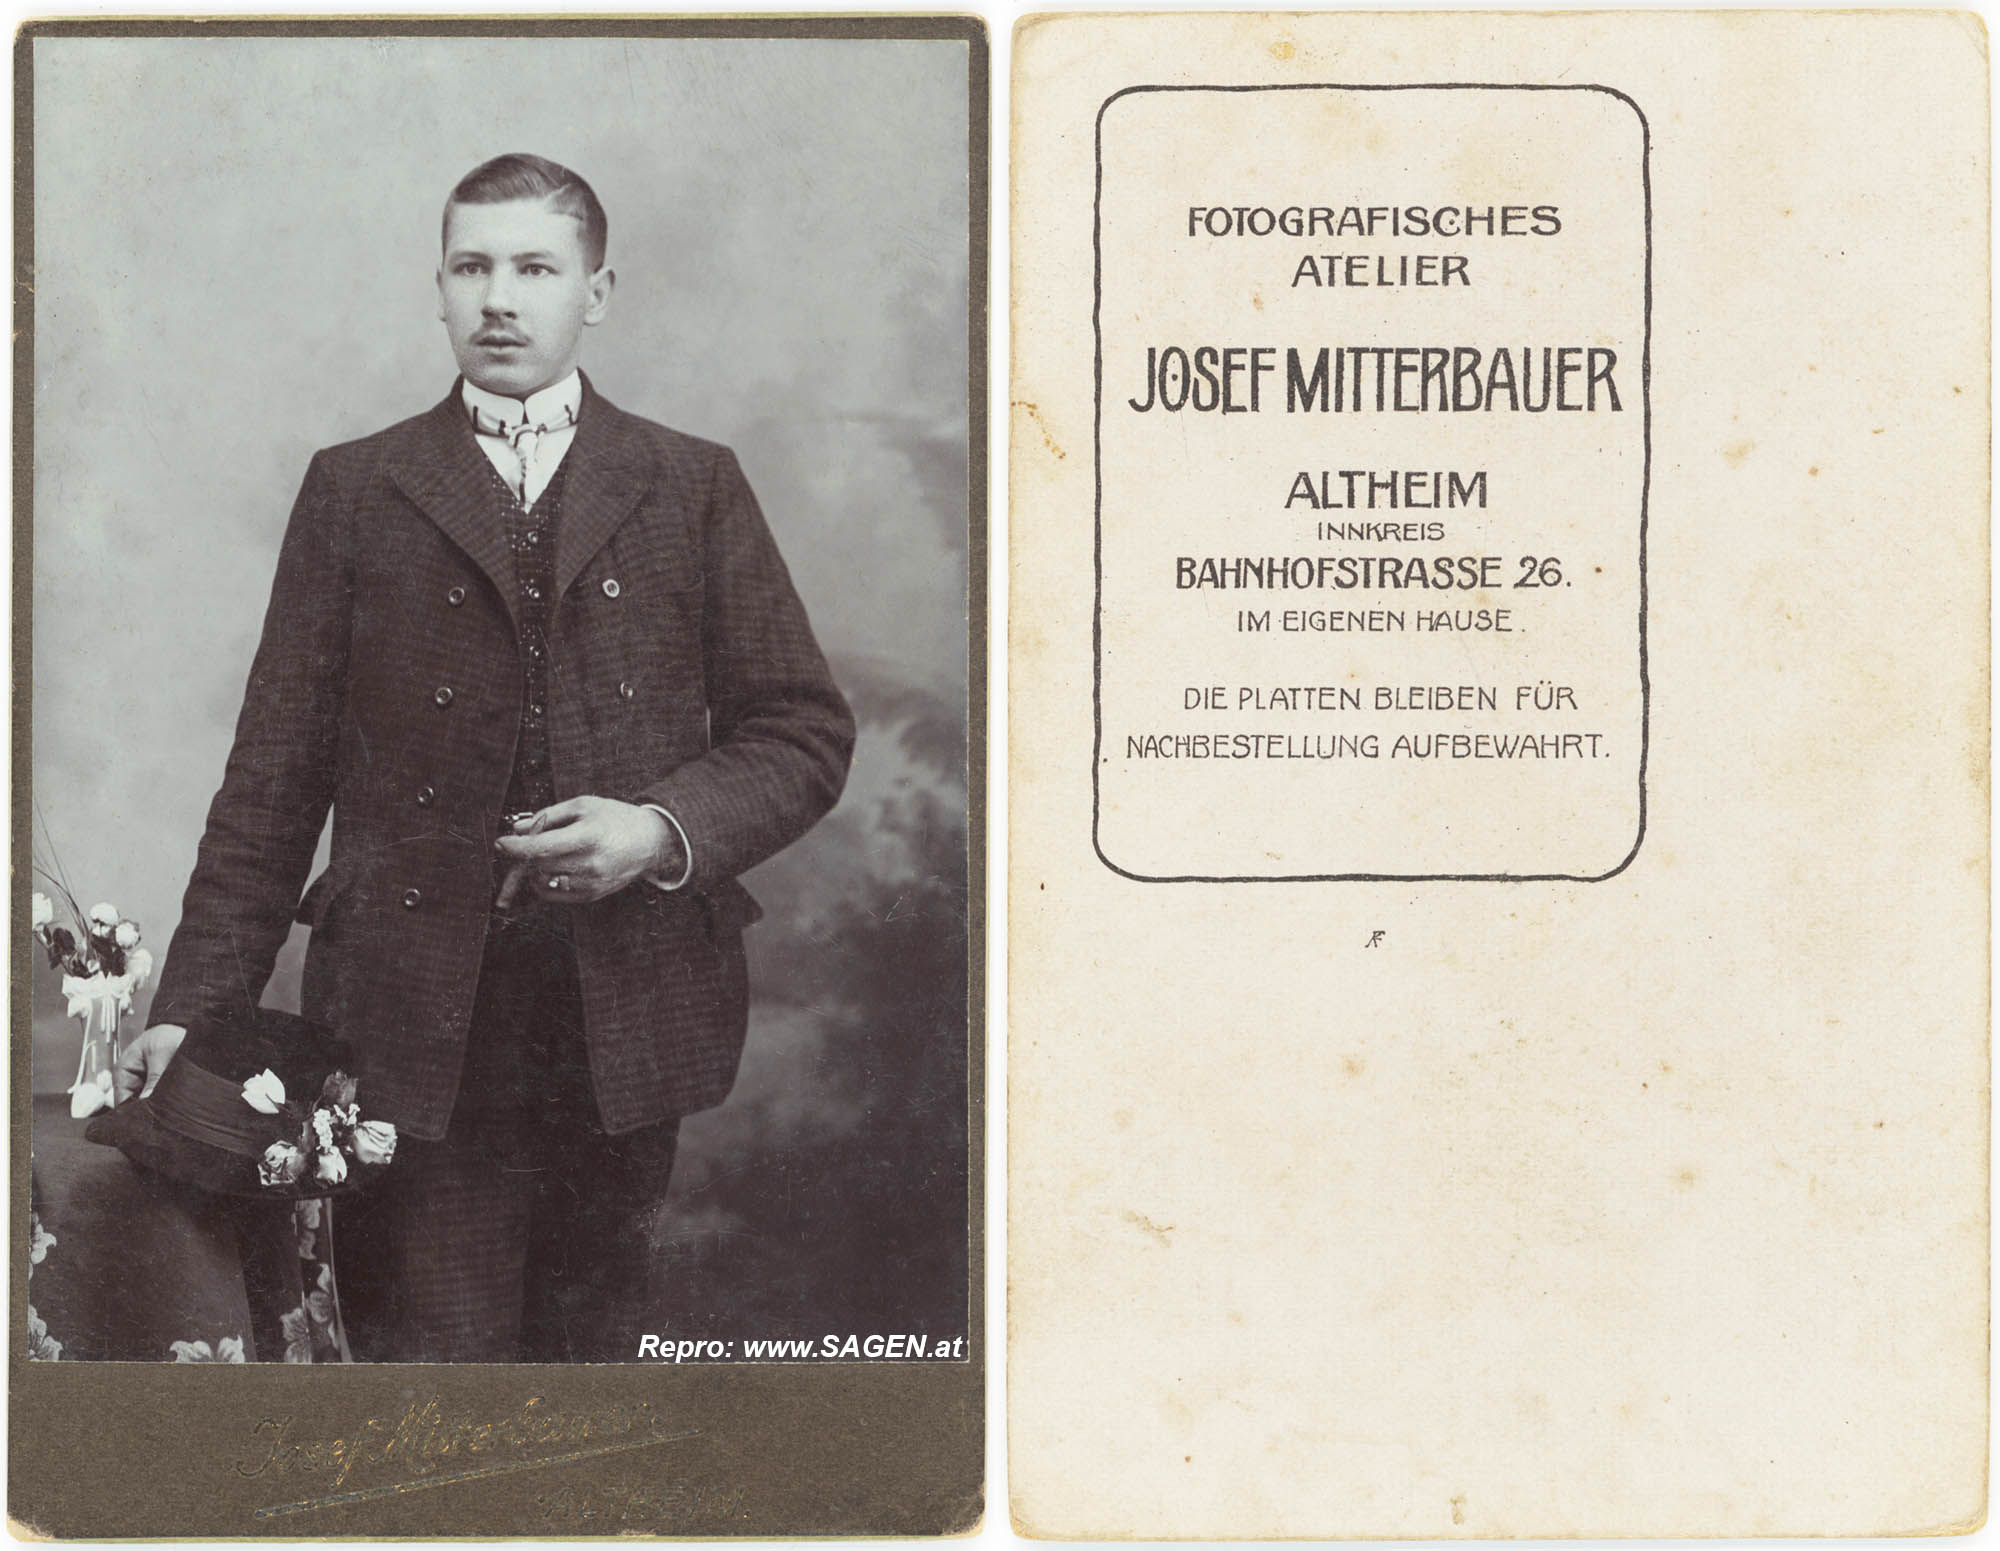 CdV Porträt Atelier Josef Mitterbauer, Altheim